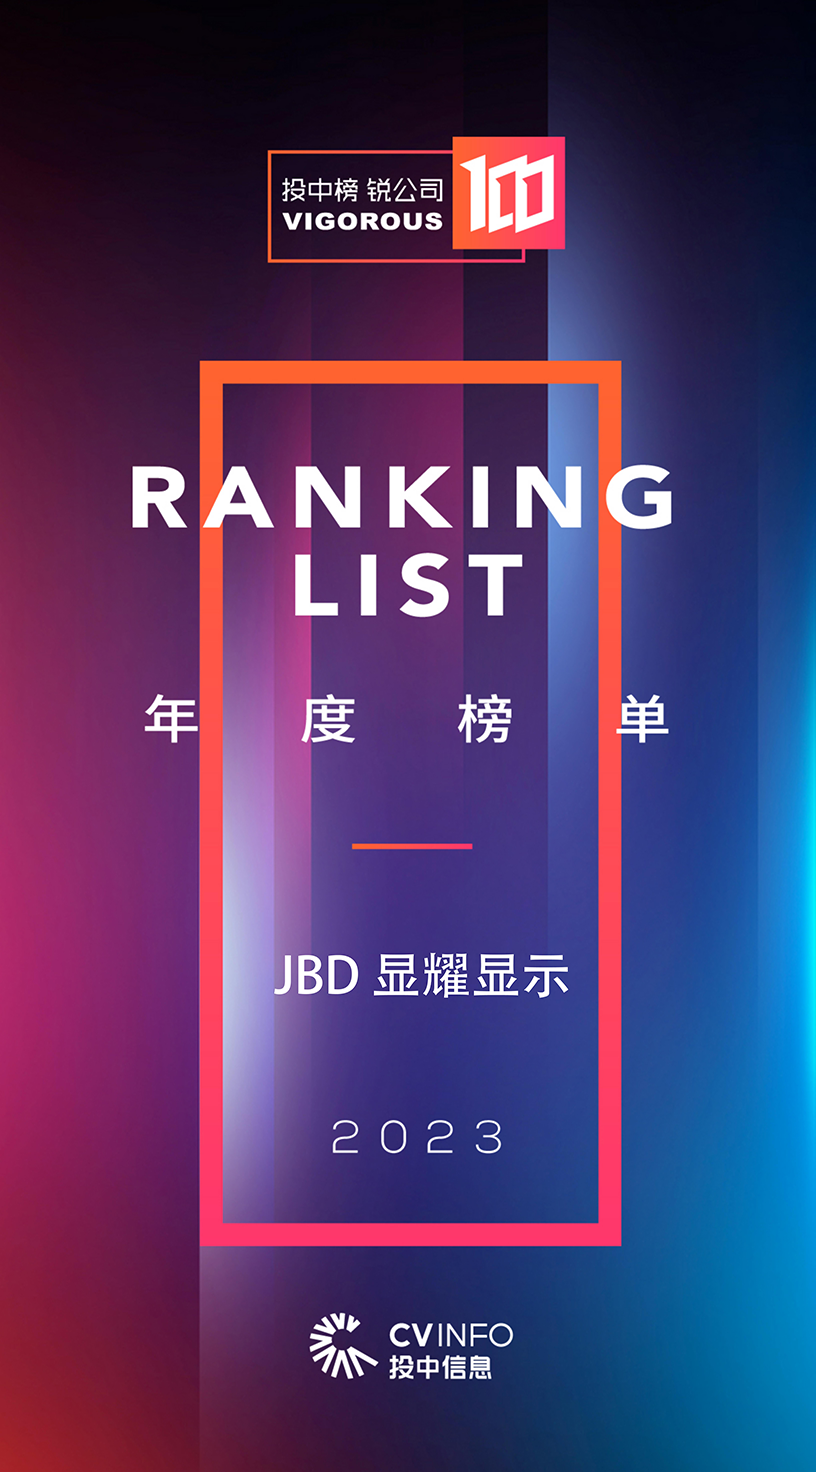 投中榜-锐公司100获奖图-JBD显耀显示-官网-800宽.png